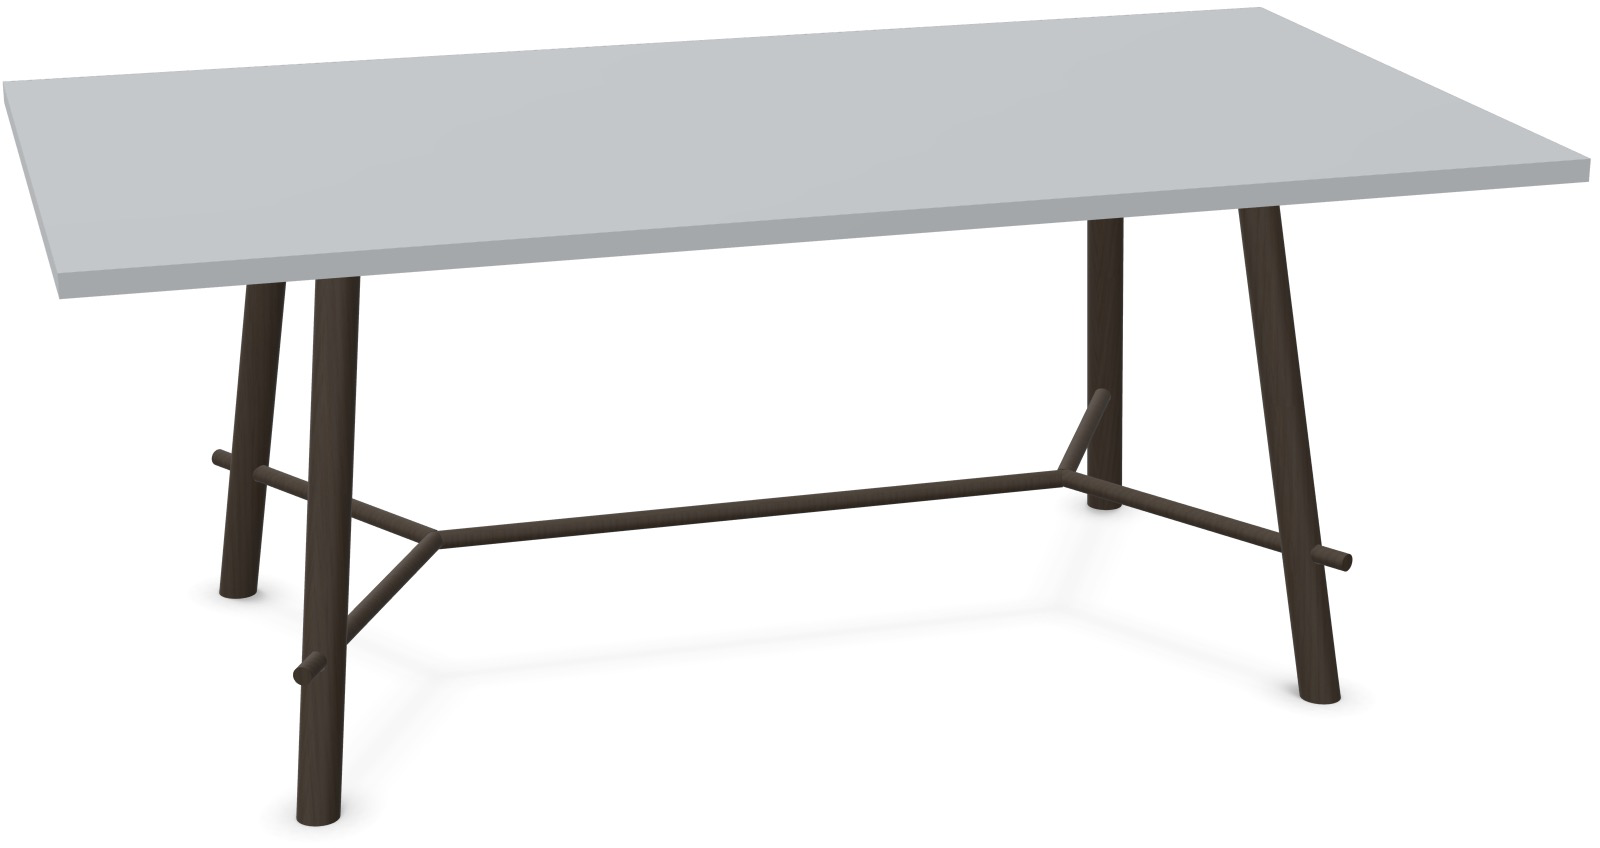 Record Living Maxi Tisch in Hellgrau / Eiche schwarz präsentiert im Onlineshop von KAQTU Design AG. Esstisch ist von Infiniti Design